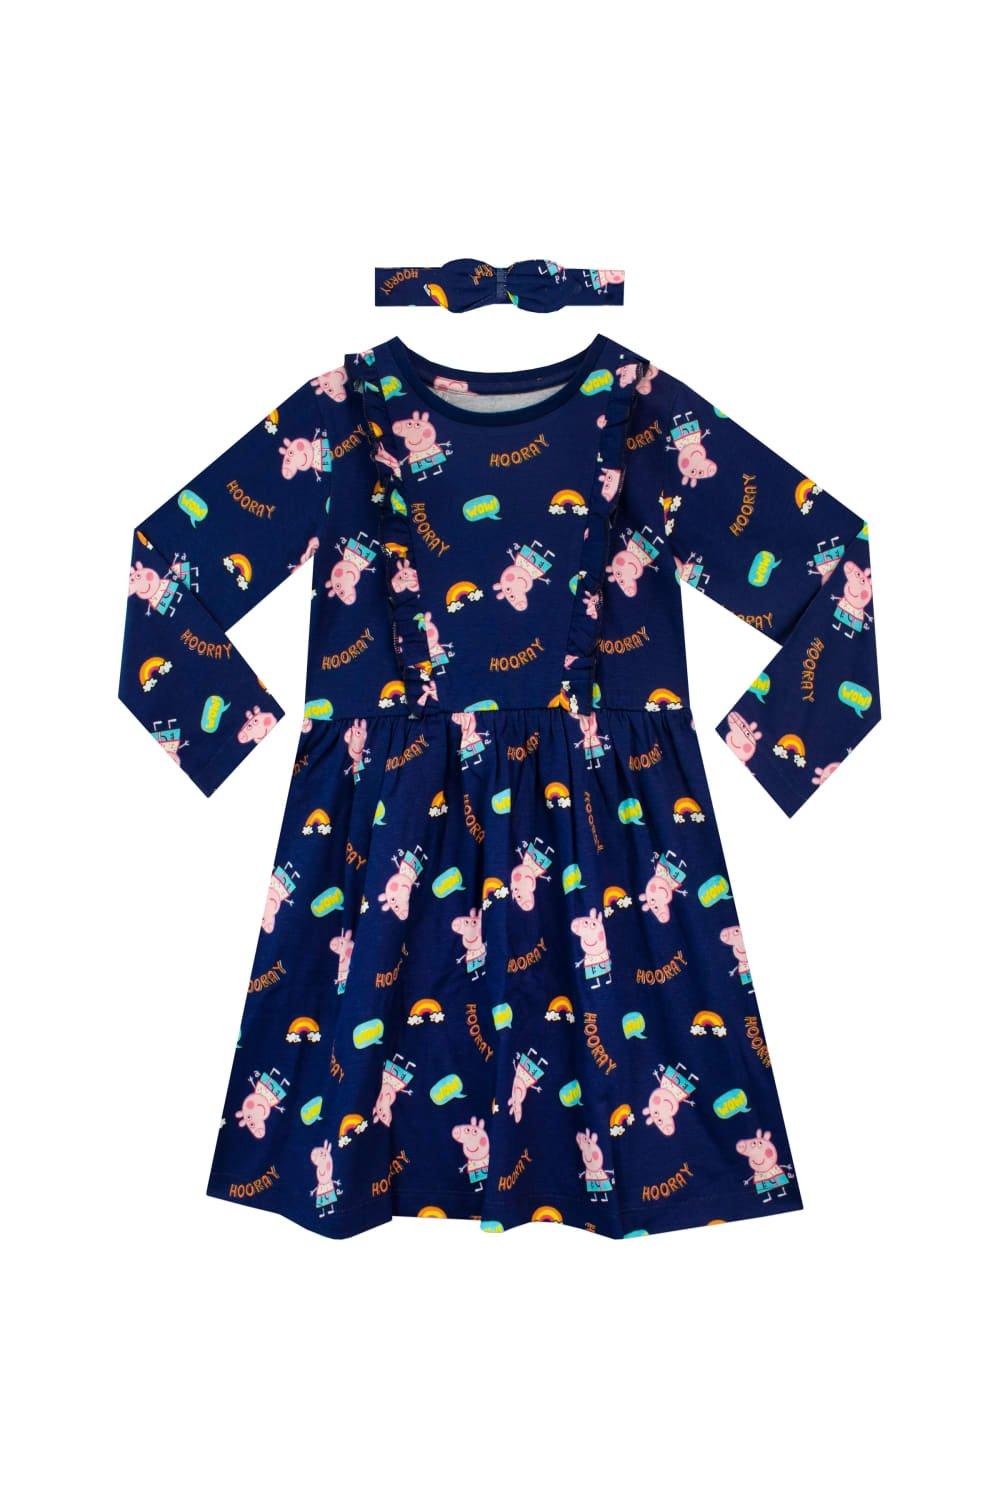 Радужное платье и комплект с повязкой на голову Peppa Pig, синий пазл origami 24эл 32 8 22см свинка пеппа работа мамы свинки 04287